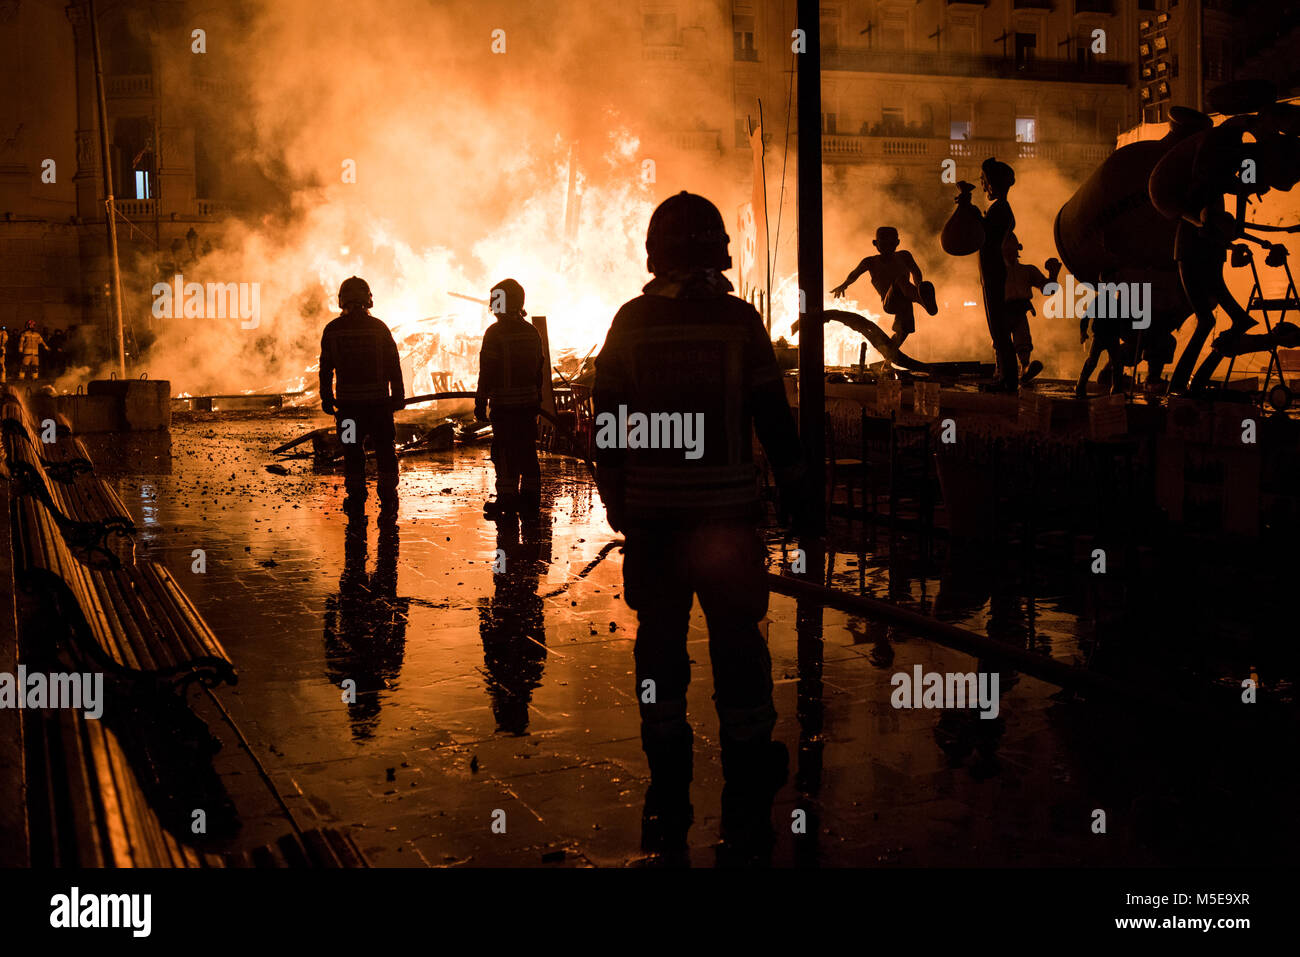 Feuerwehrmänner bei der Arbeit während der Nacht von "La Crema" die Verbrennung an der valenzianischen Rathausplatz als Teil des letzten Tages Las Fallas Festivals in Sp Stockfoto